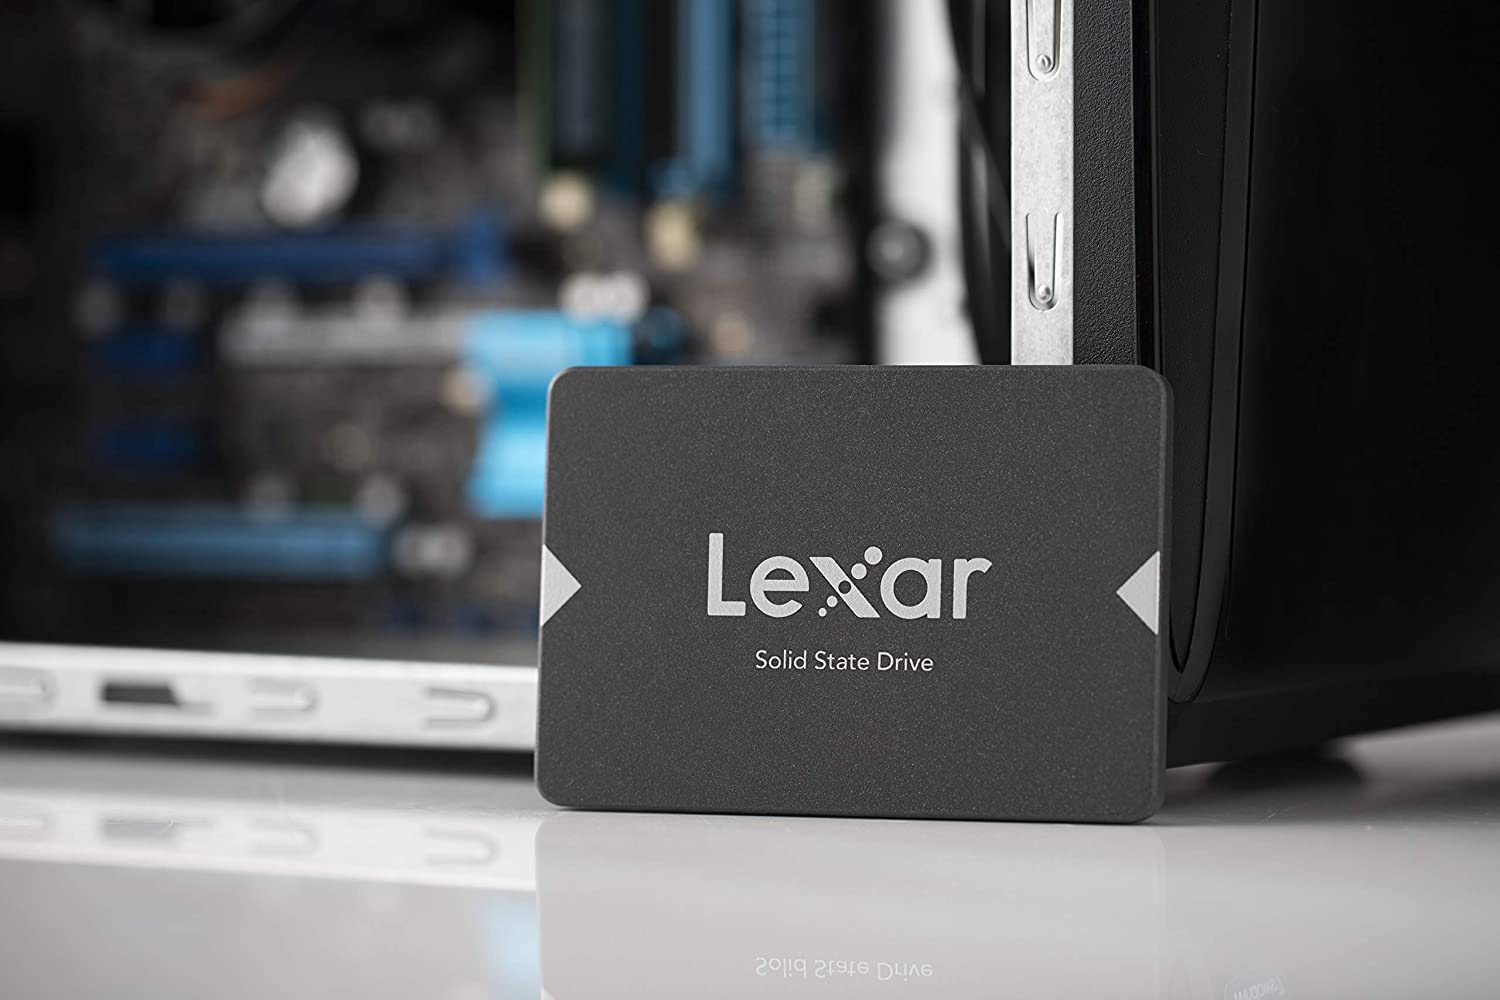 Lexar LNS100, 2.5” Sata III (6GB/S) 256GB SSD, Black - LNS100-256RB